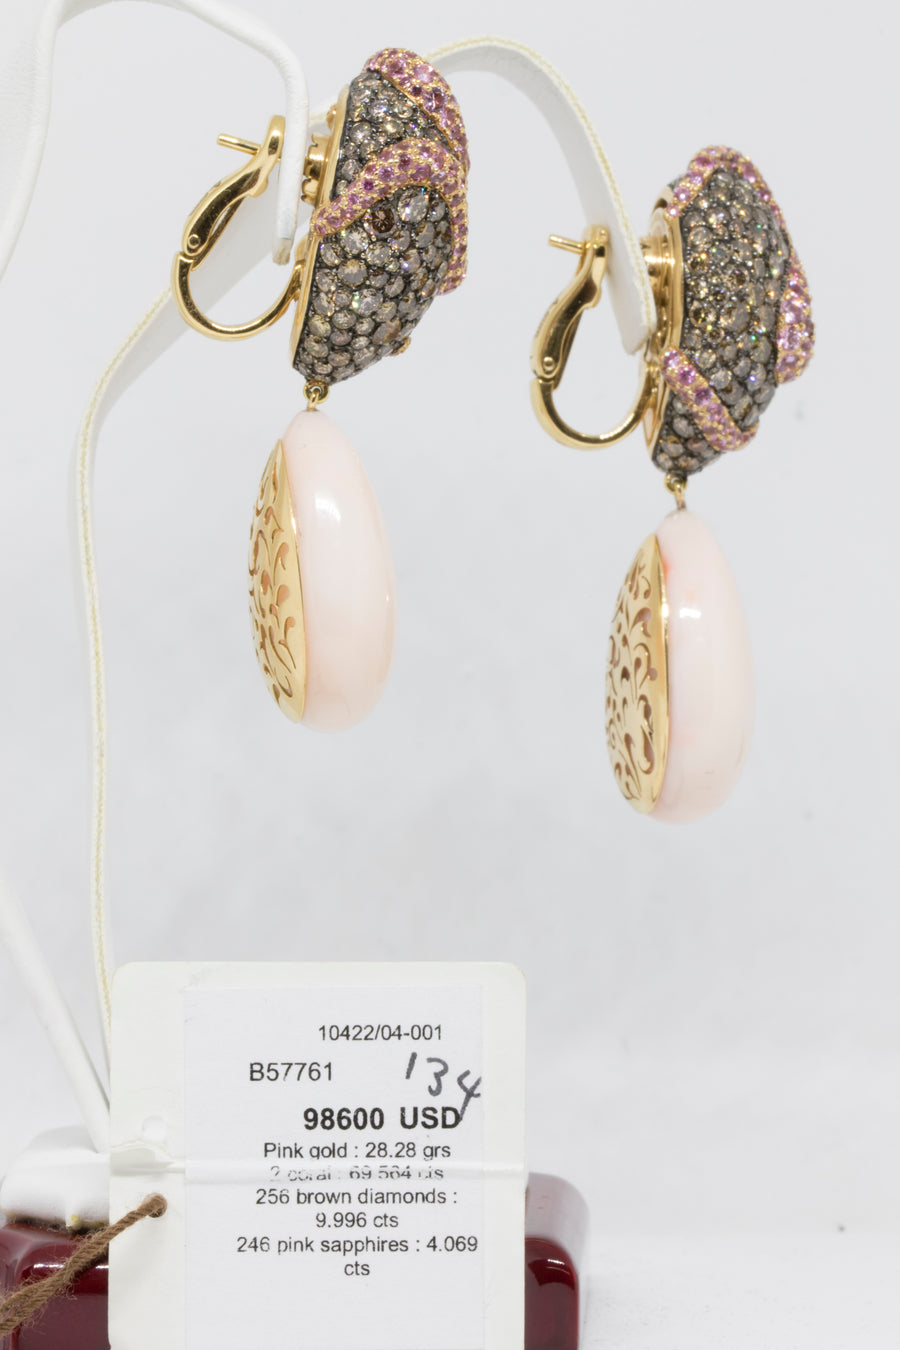 de GRISOGONO Pink Gold Earrings w/ Brown Diamonds - eJewels